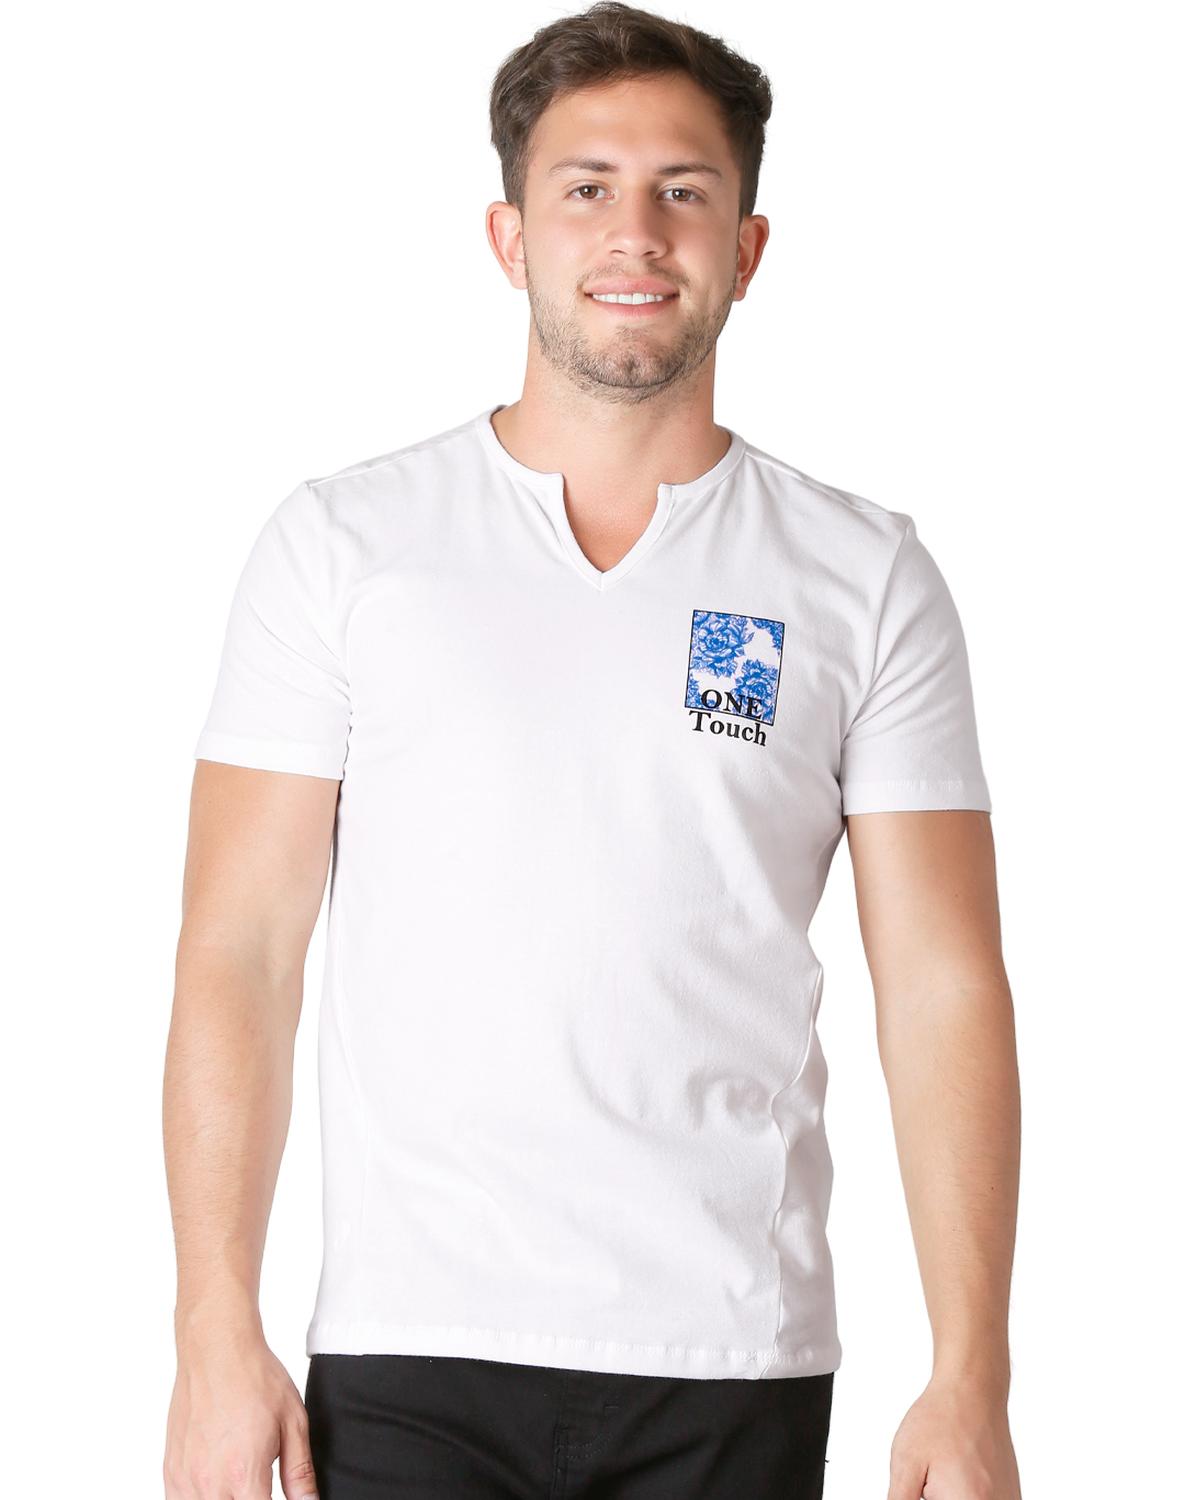 Playera Moda Camiseta Hombre Blanco Silver Plate 60204603